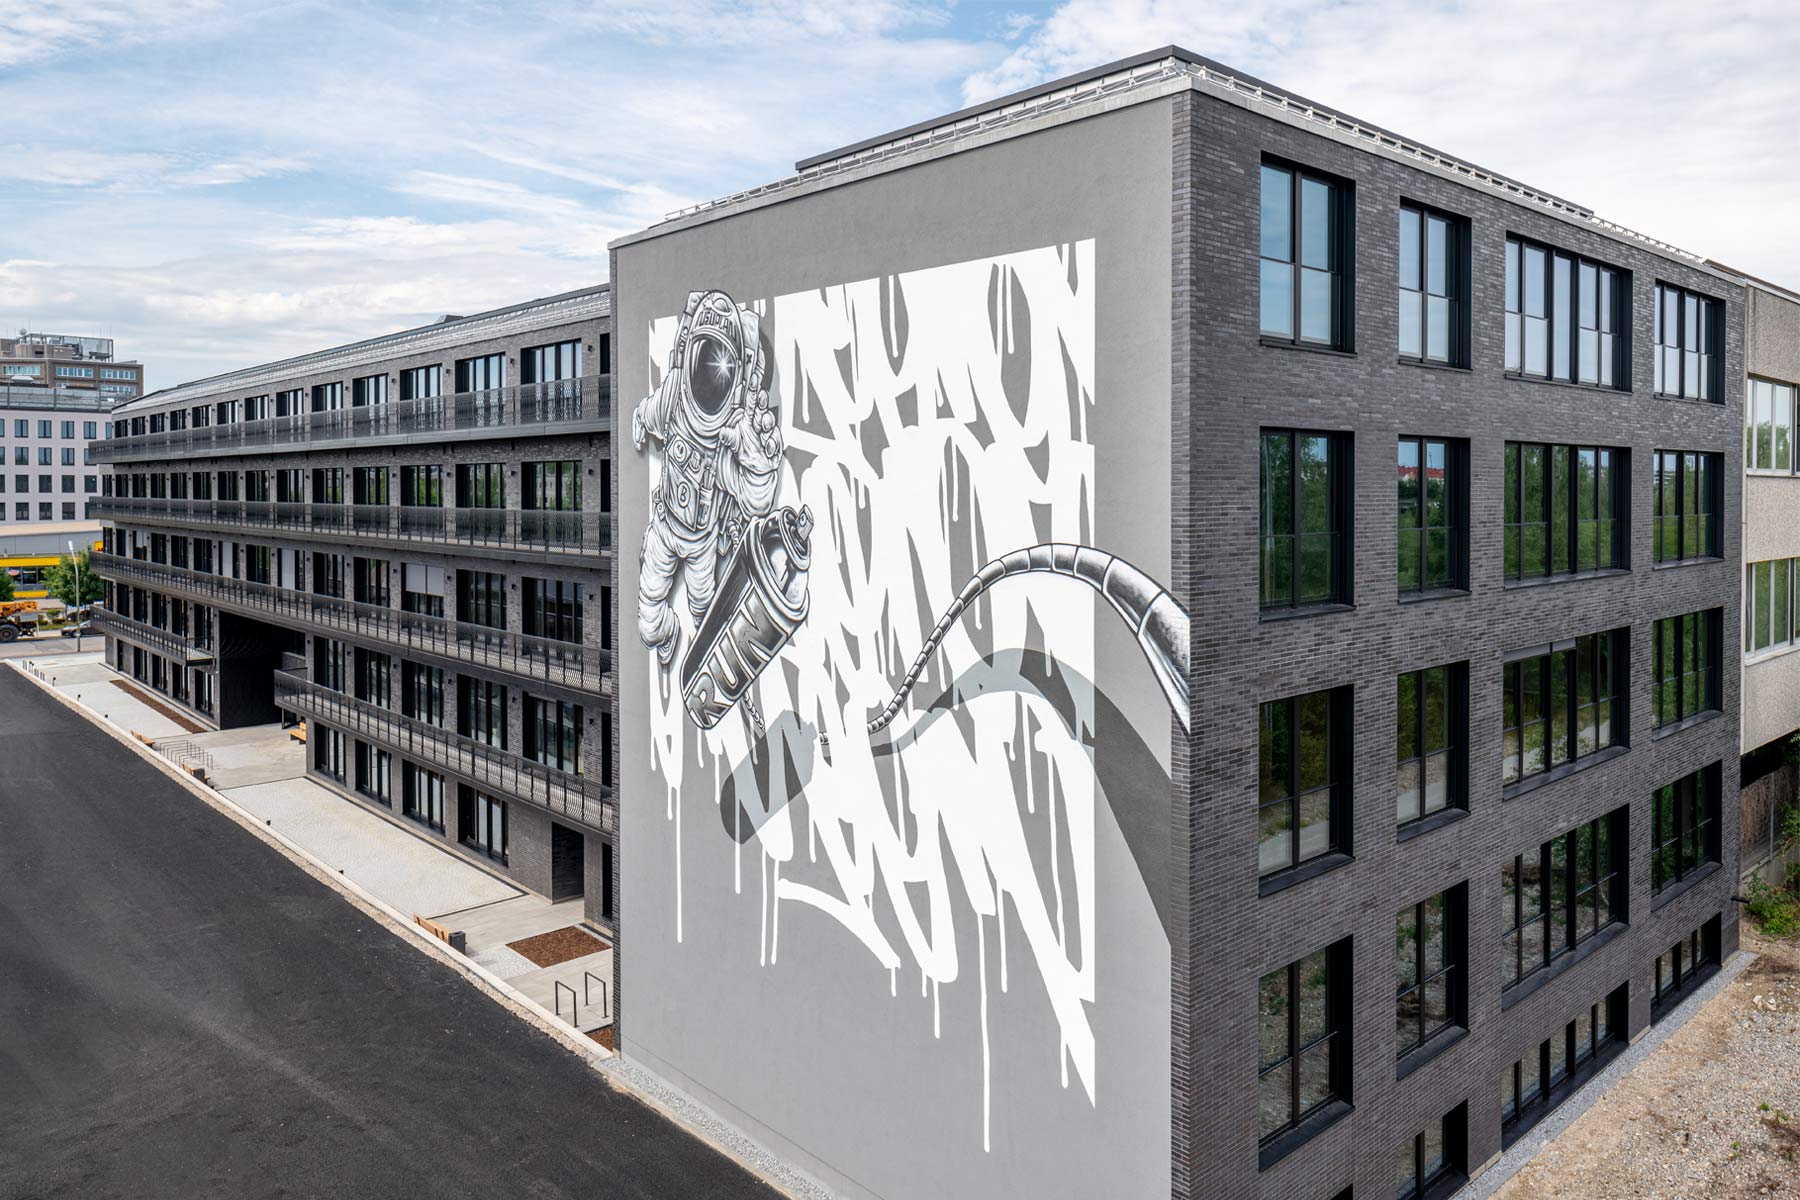 Auf einer Außenmauer des Bürogebäudes The Run in München ist ein großes Graffiti zu sehen: Ein Astronaut greift nach einer Spray-Dose.